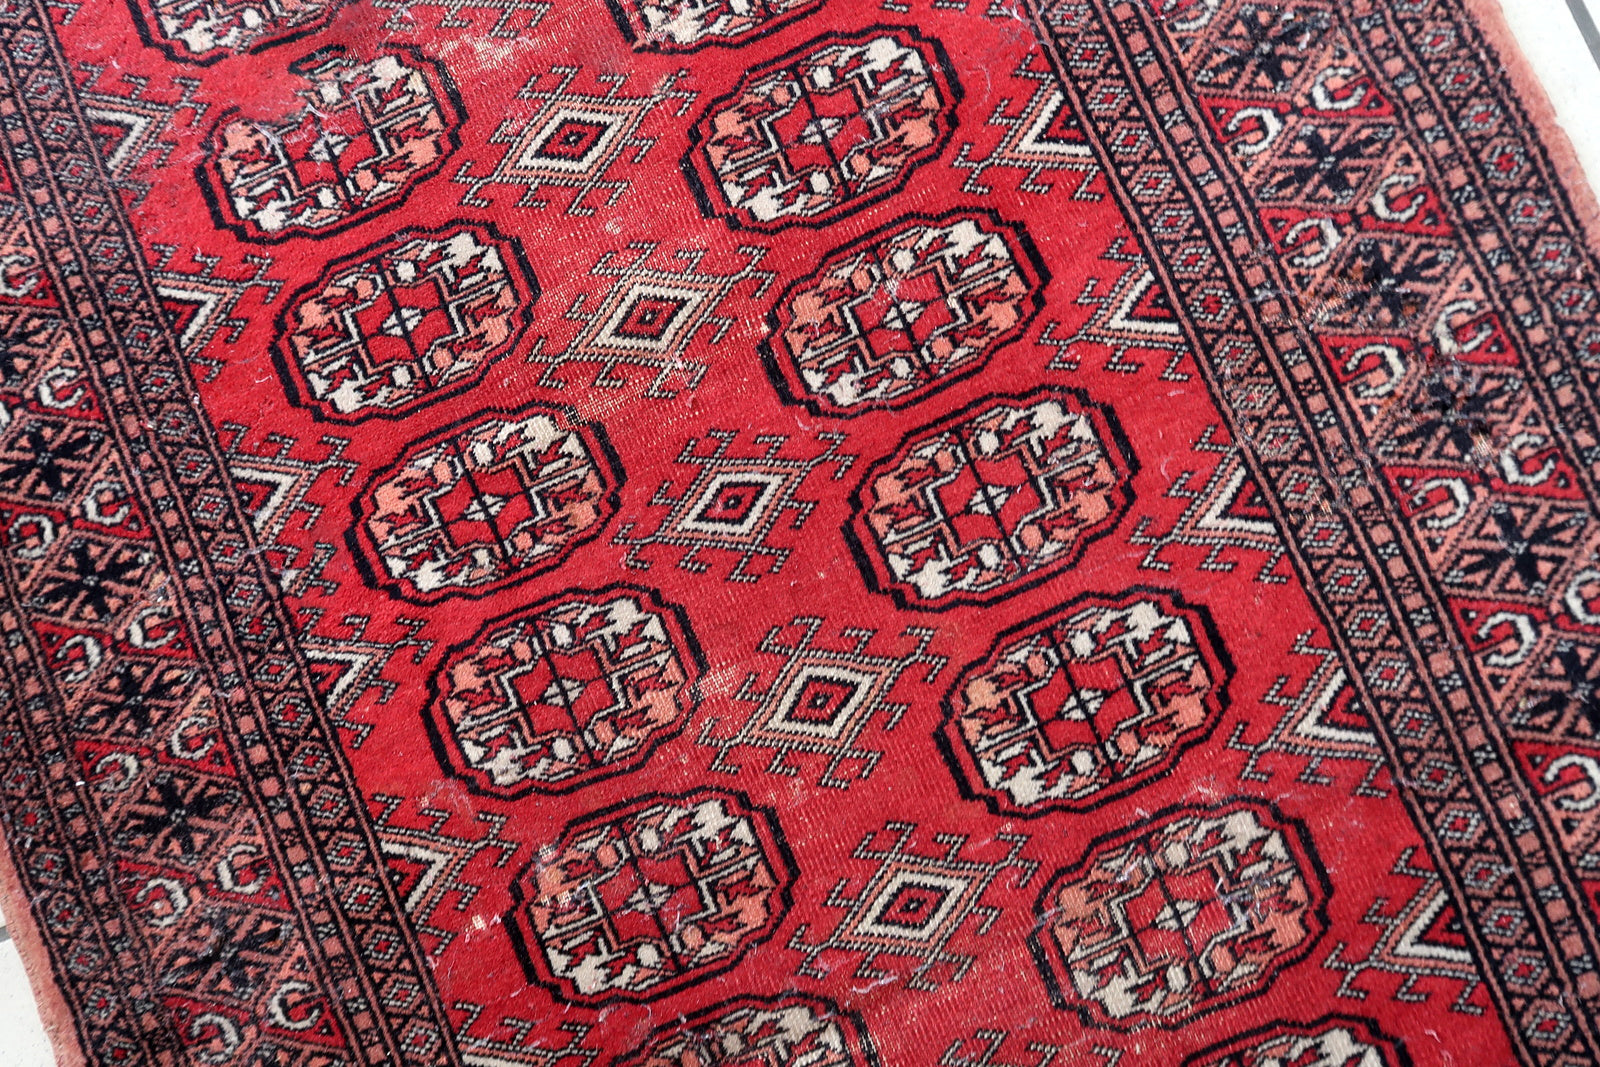 Vintage Uzbek craftsmanship.